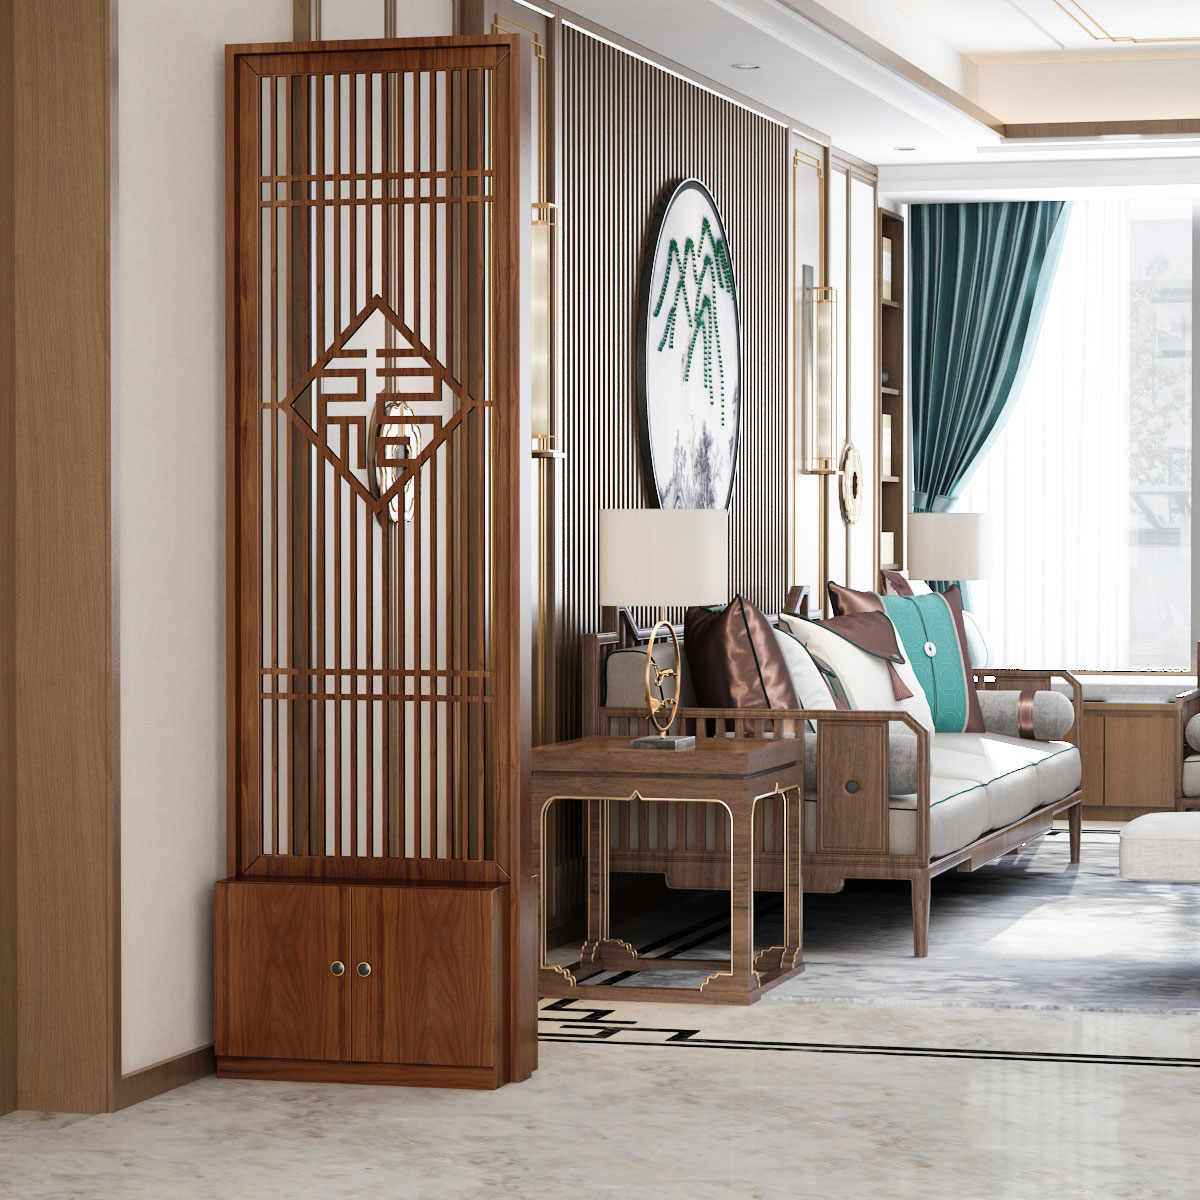 中式屏風 隔斷 木質 鏤空 雕花客廳 可移動玄關 鞋櫃包郵簡約現代 裝飾架